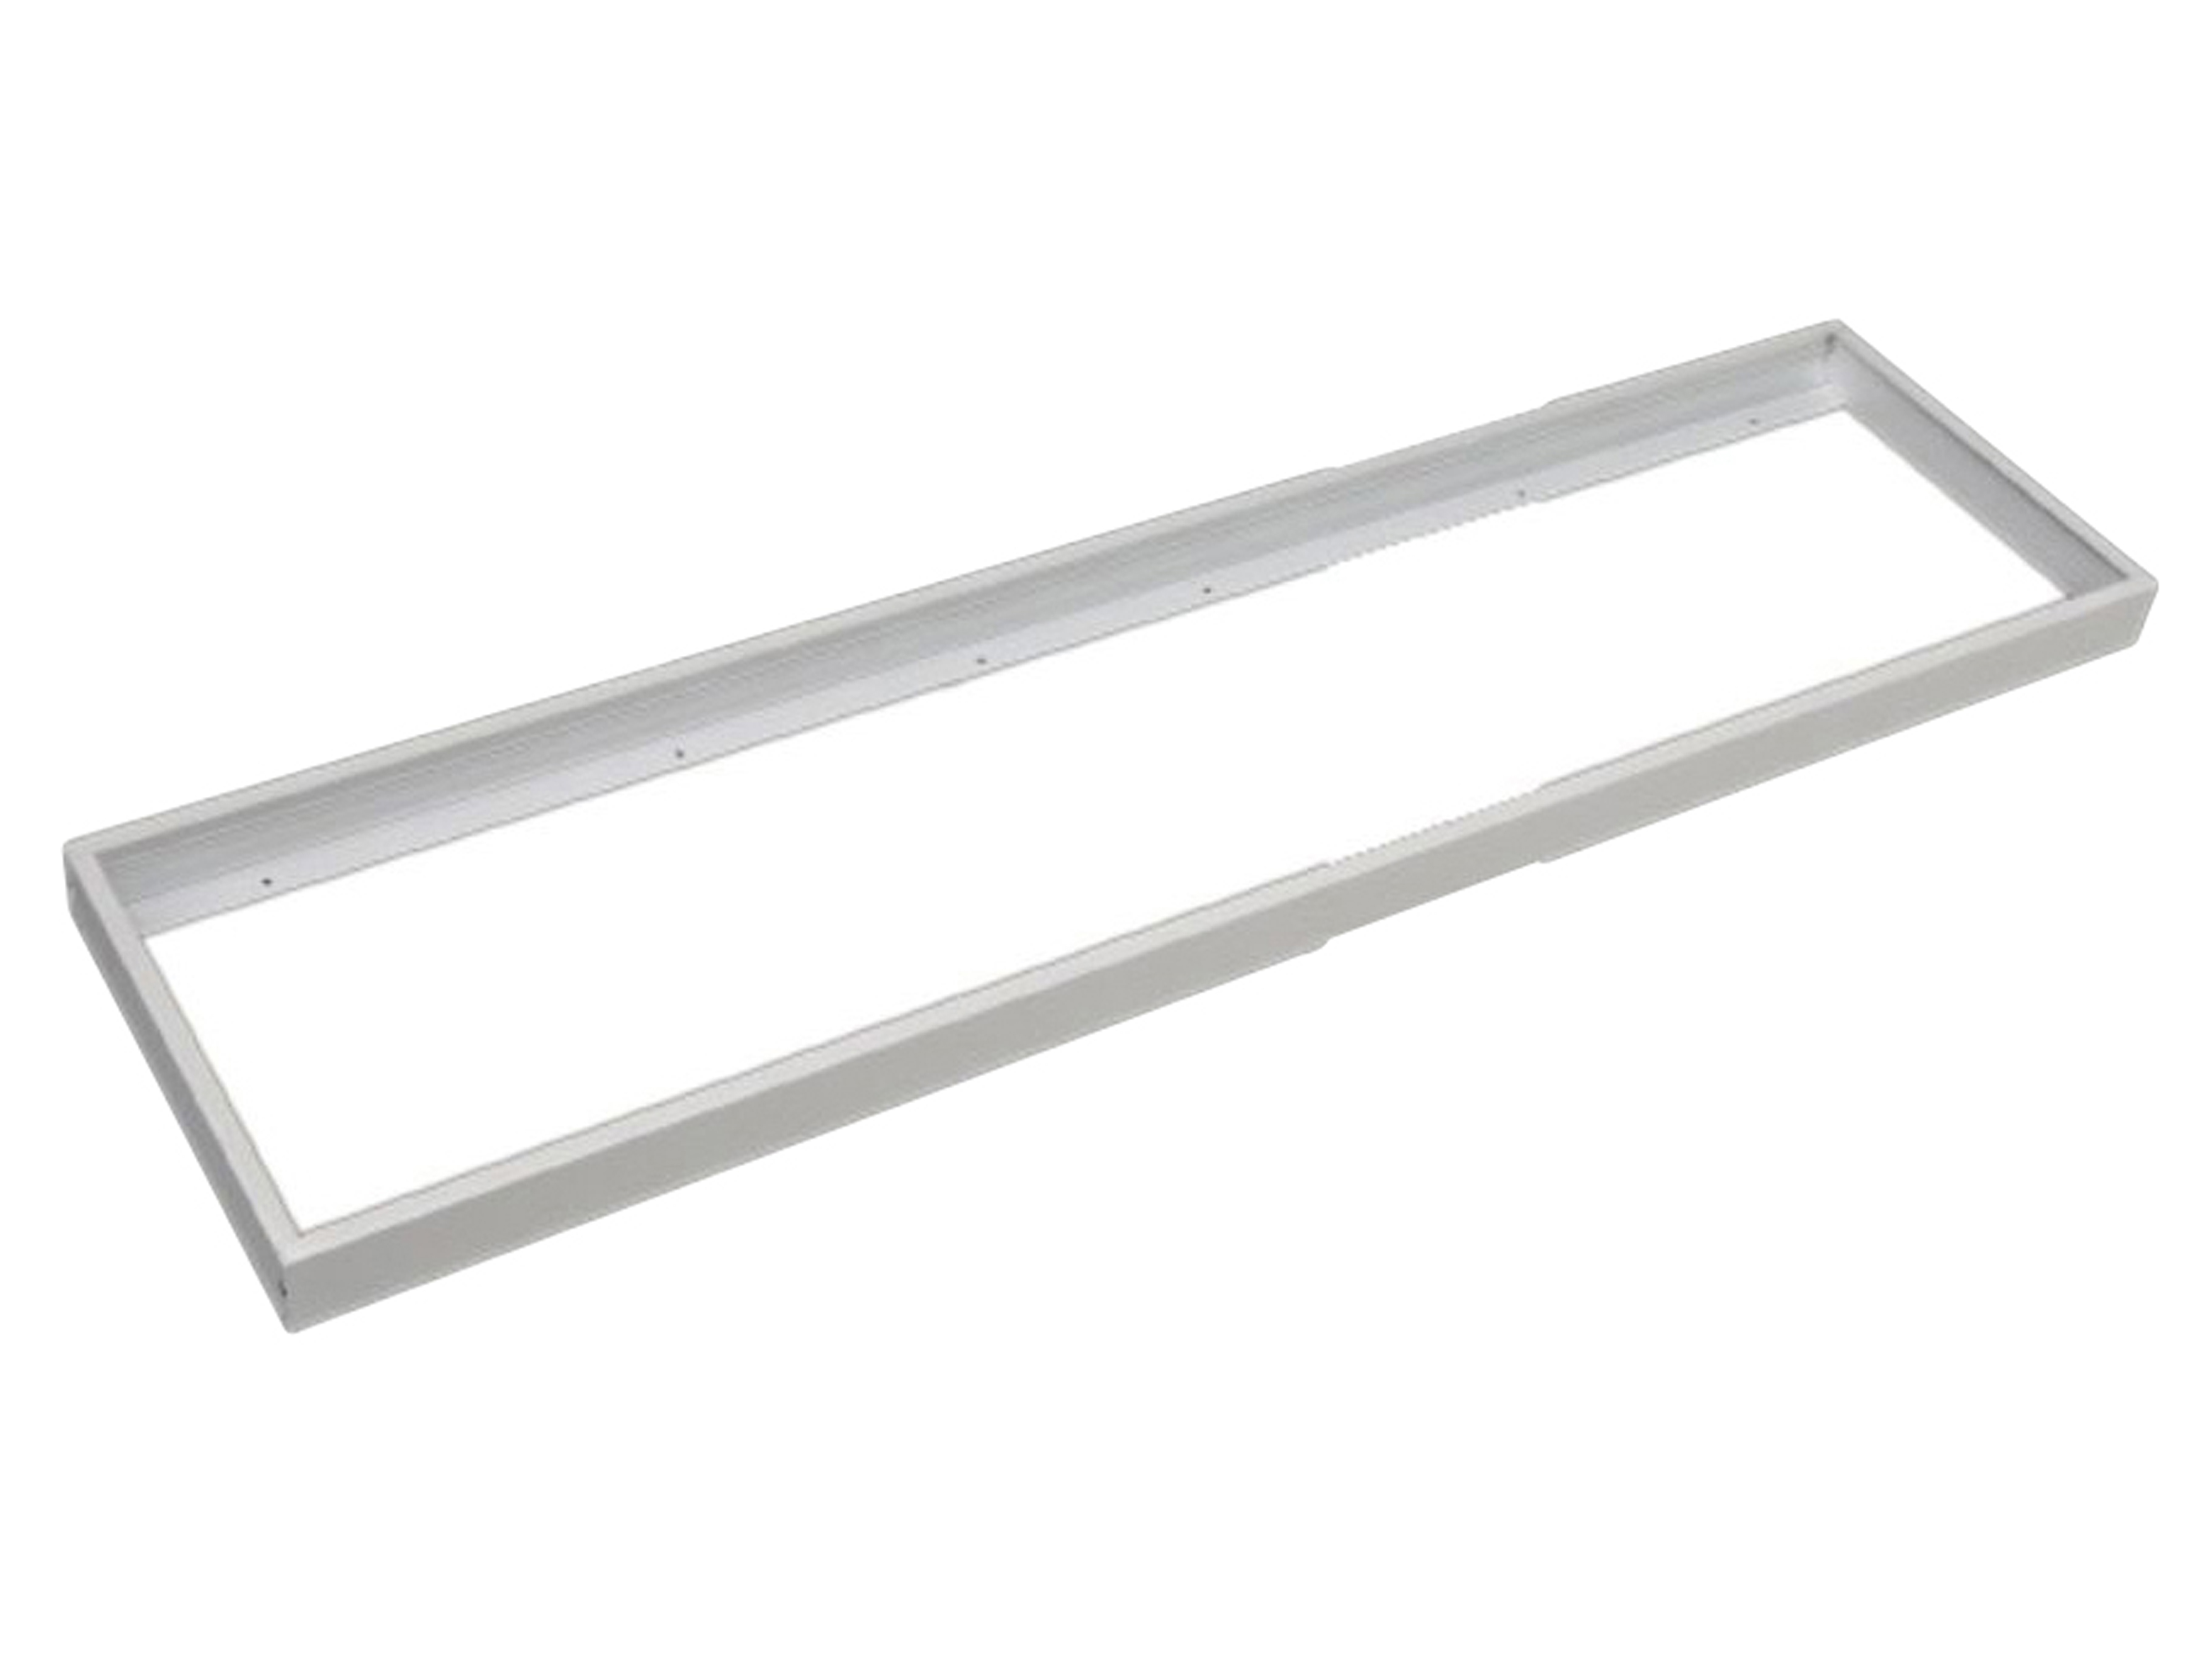 LUXULA LED-Panel Aufbaurahmen LX0705, 120x30 cm, steckbar, weiß